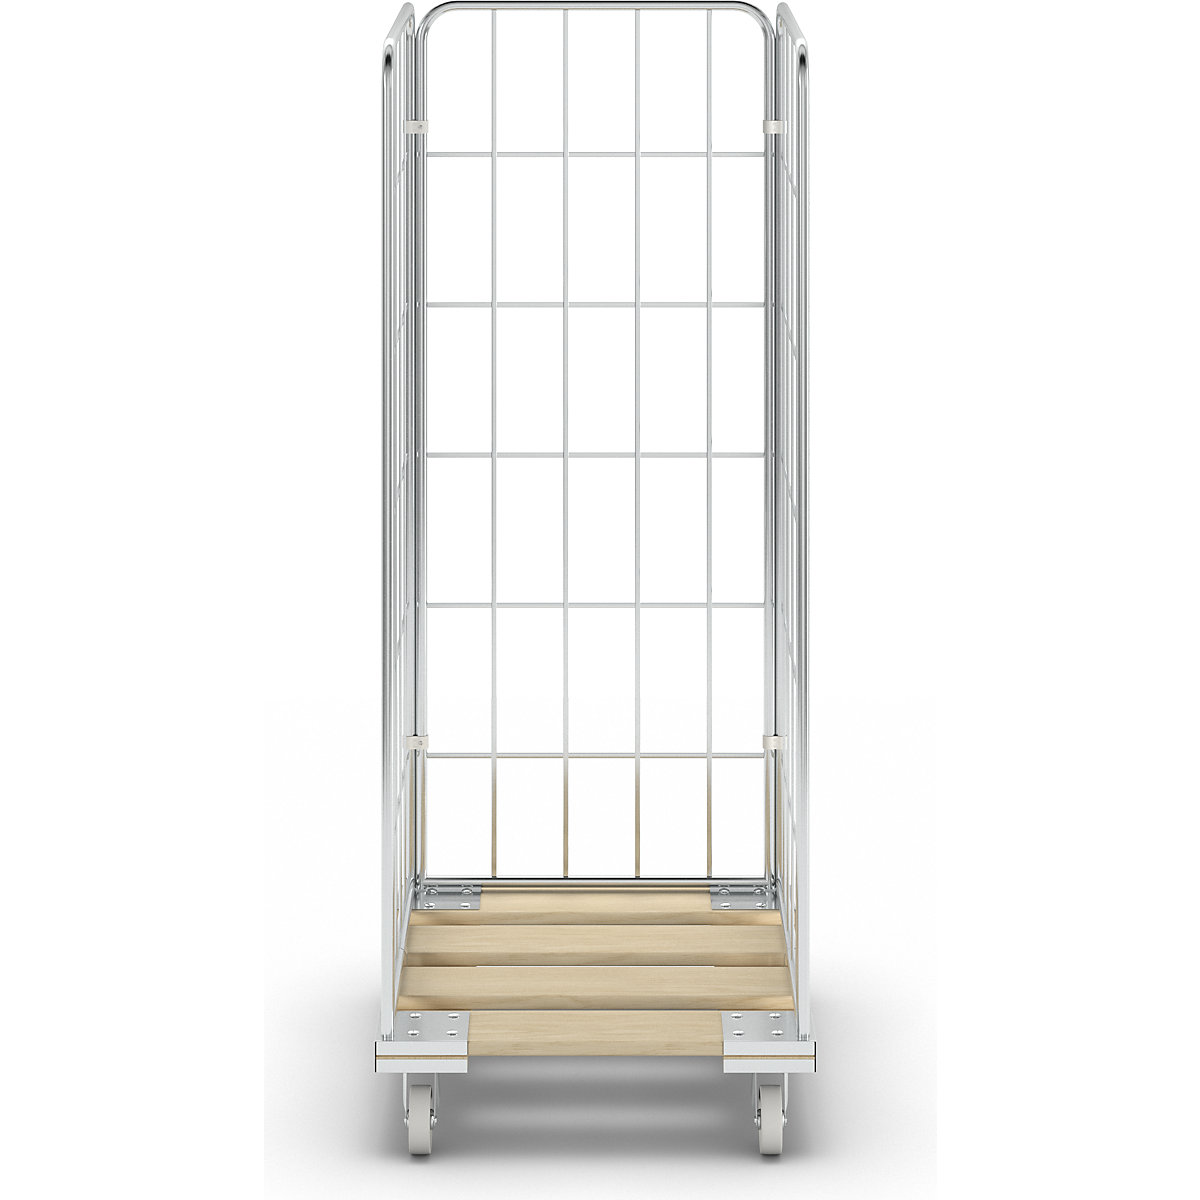 Contentor rolante com plataforma rolante em madeira (Imagem do produto 5)-4